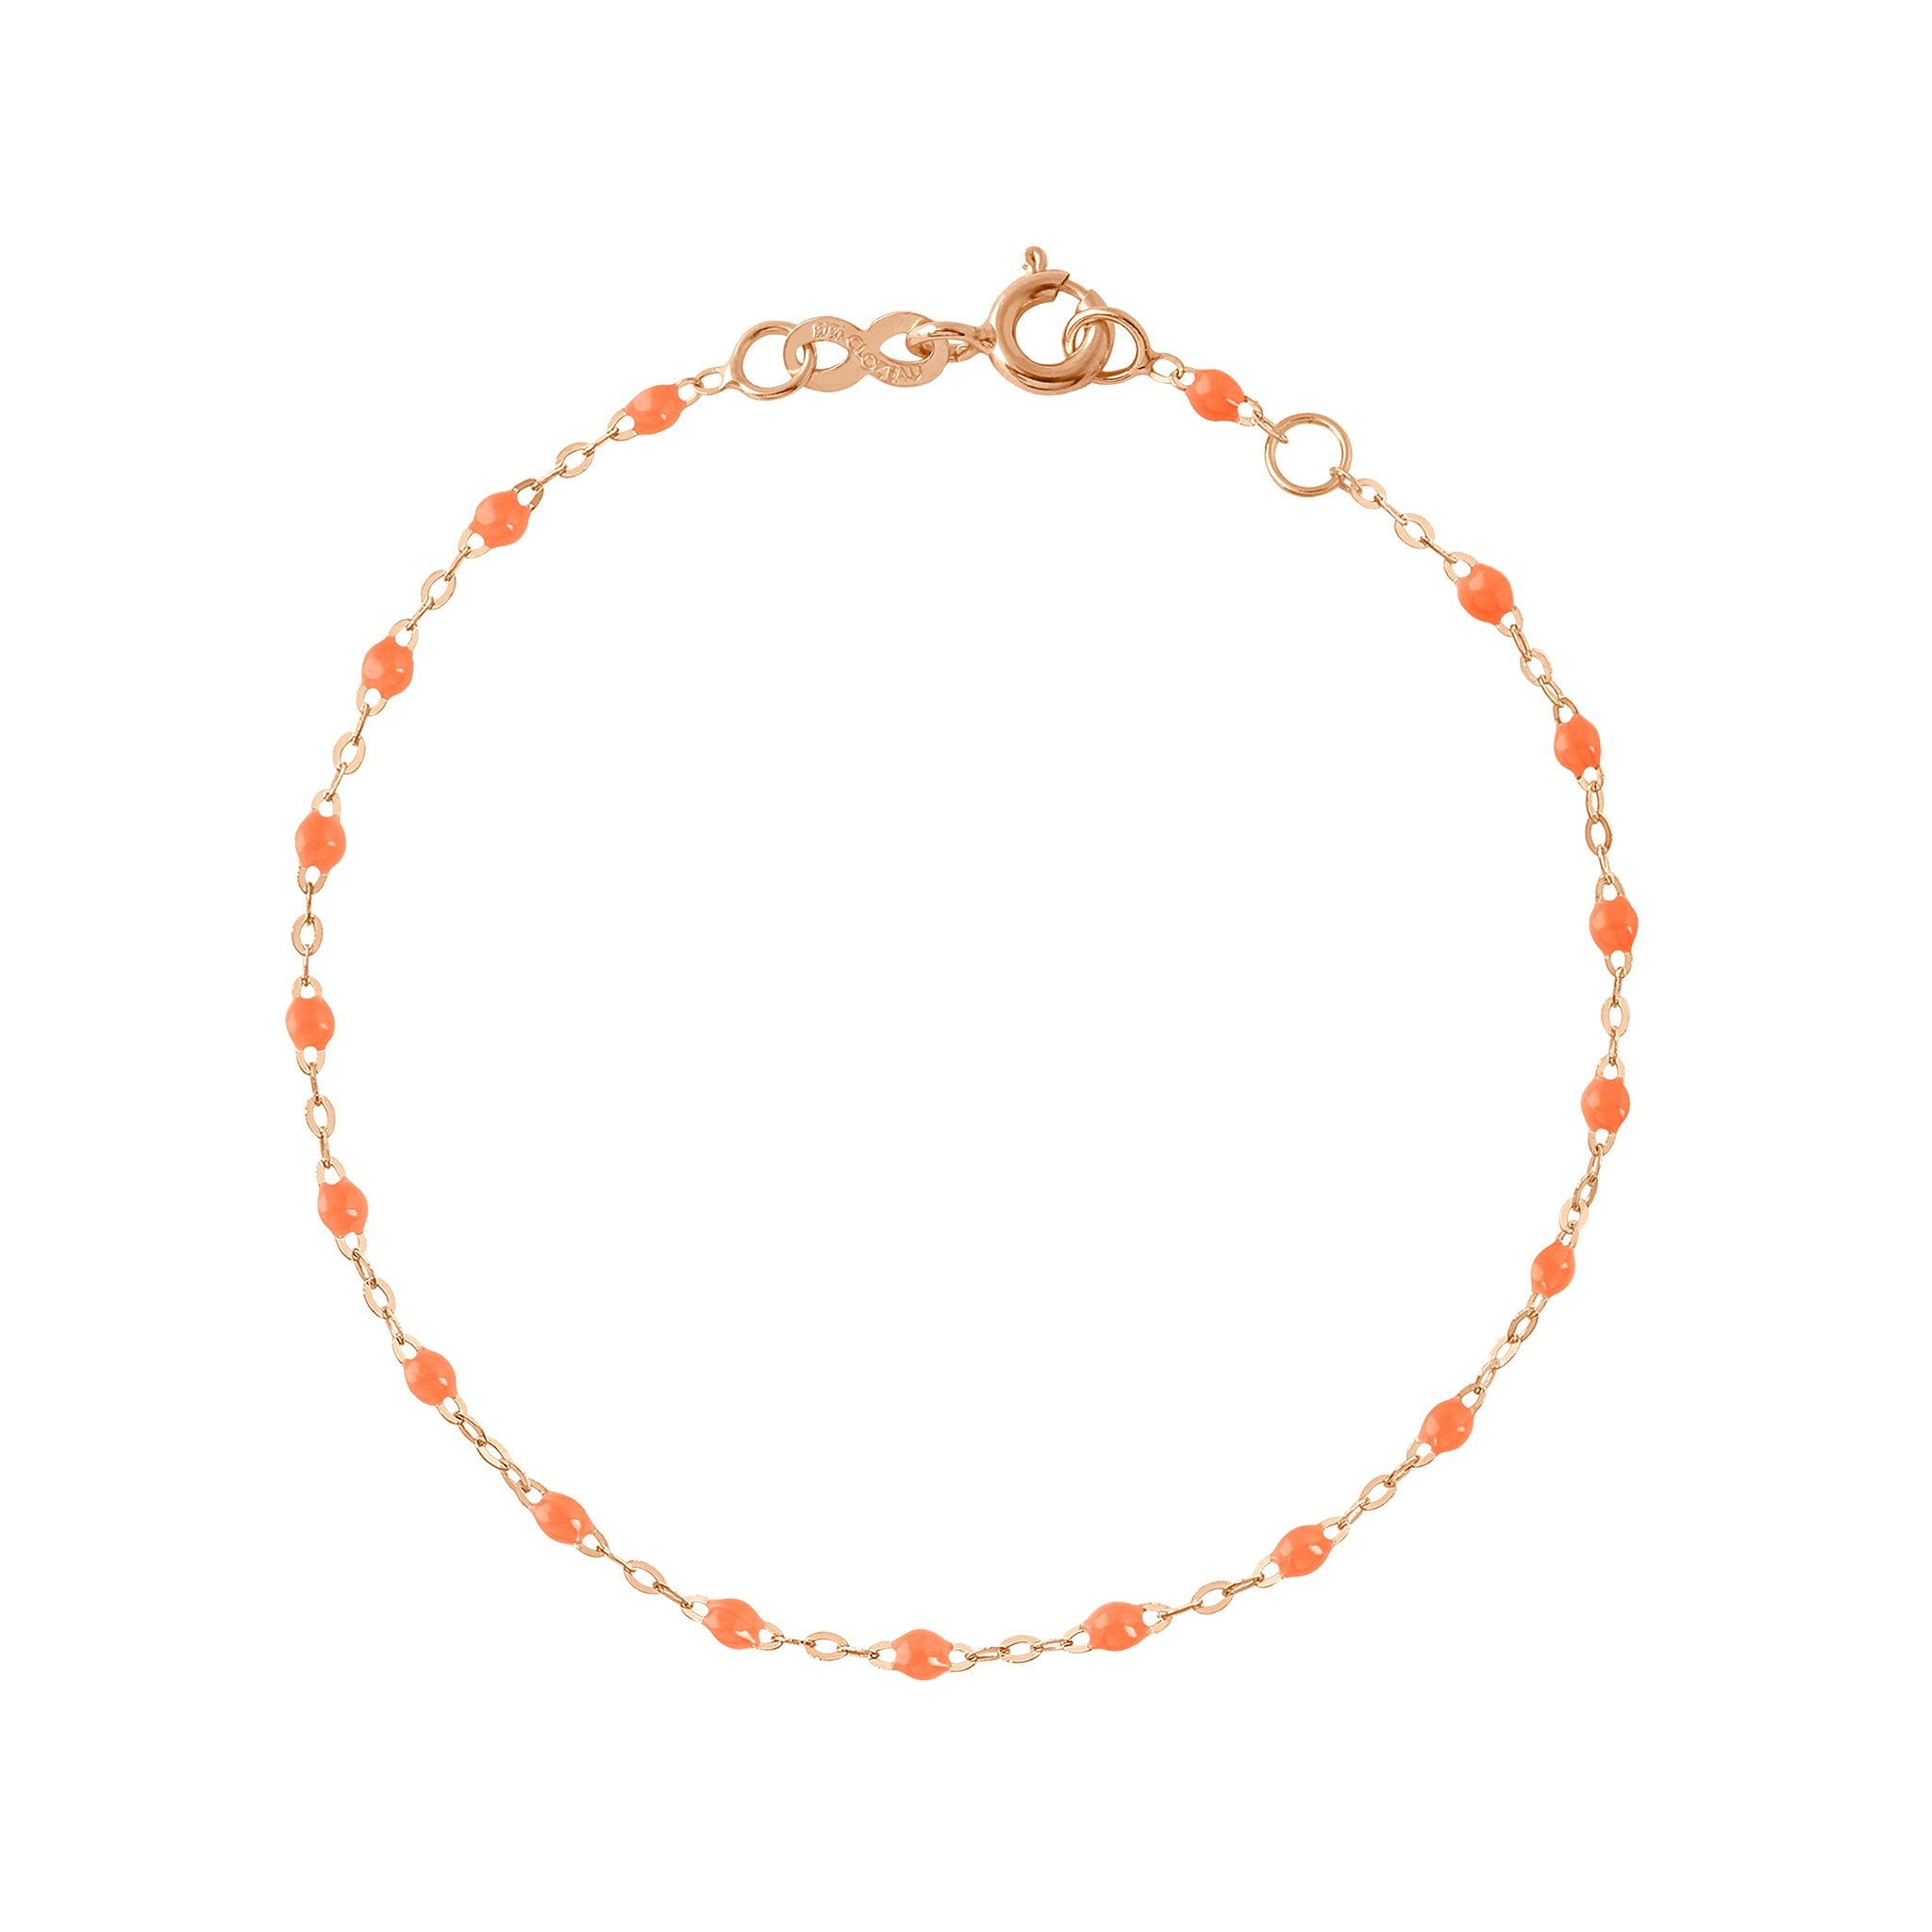 Bracelet orange fluo Classique Gigi, or rose, 17 cm classique gigi Référence :  b3gi001r1317xx -1